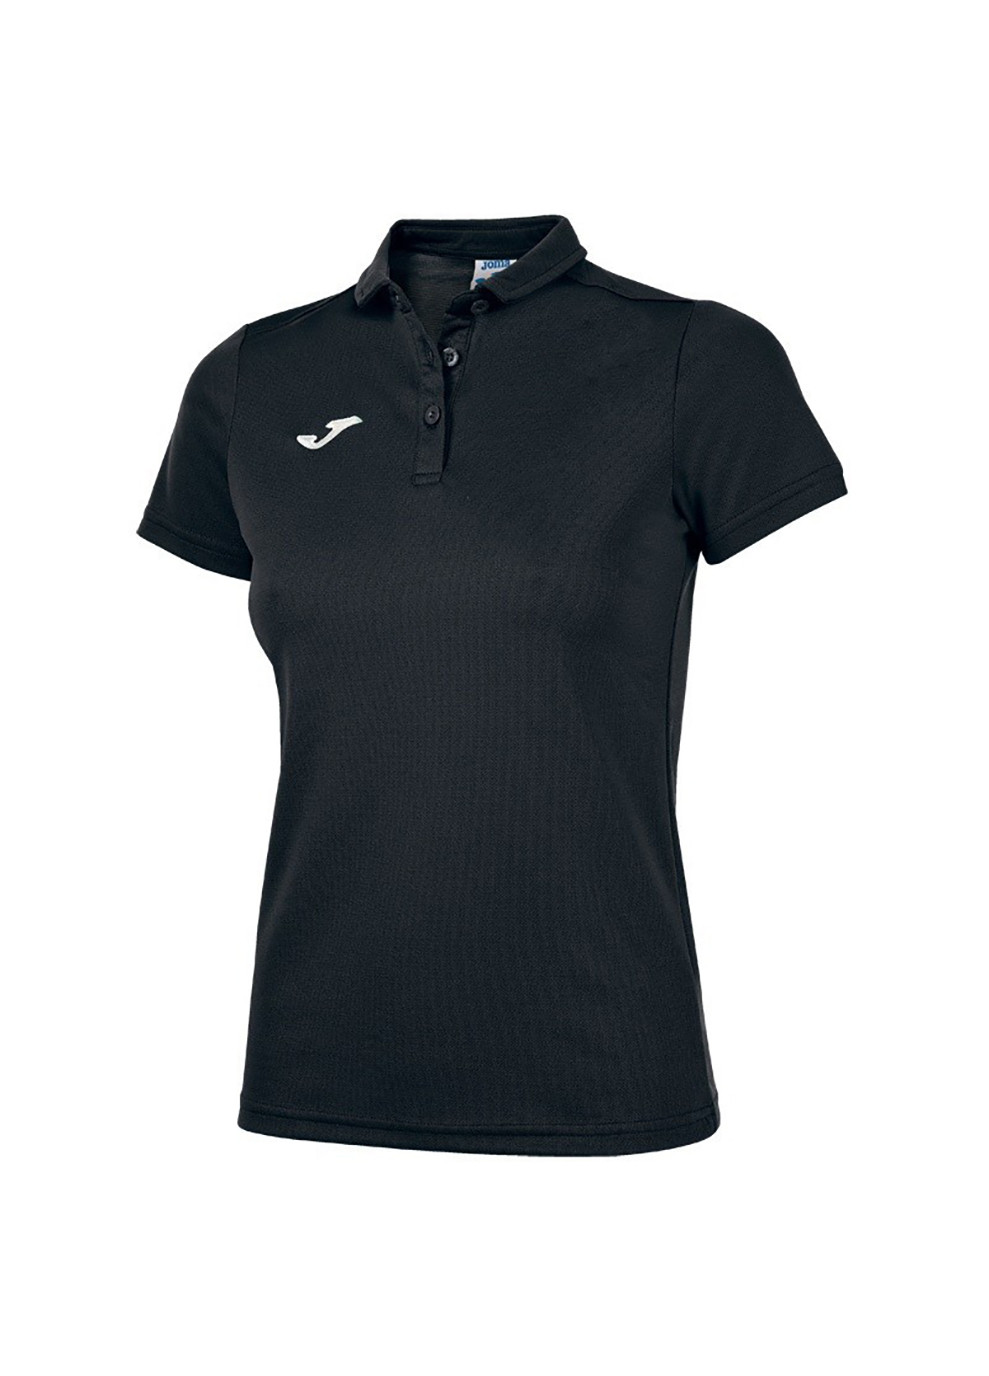 Черная женская футболка-поло hobby women poo shirt black s/s черный Joma с логотипом